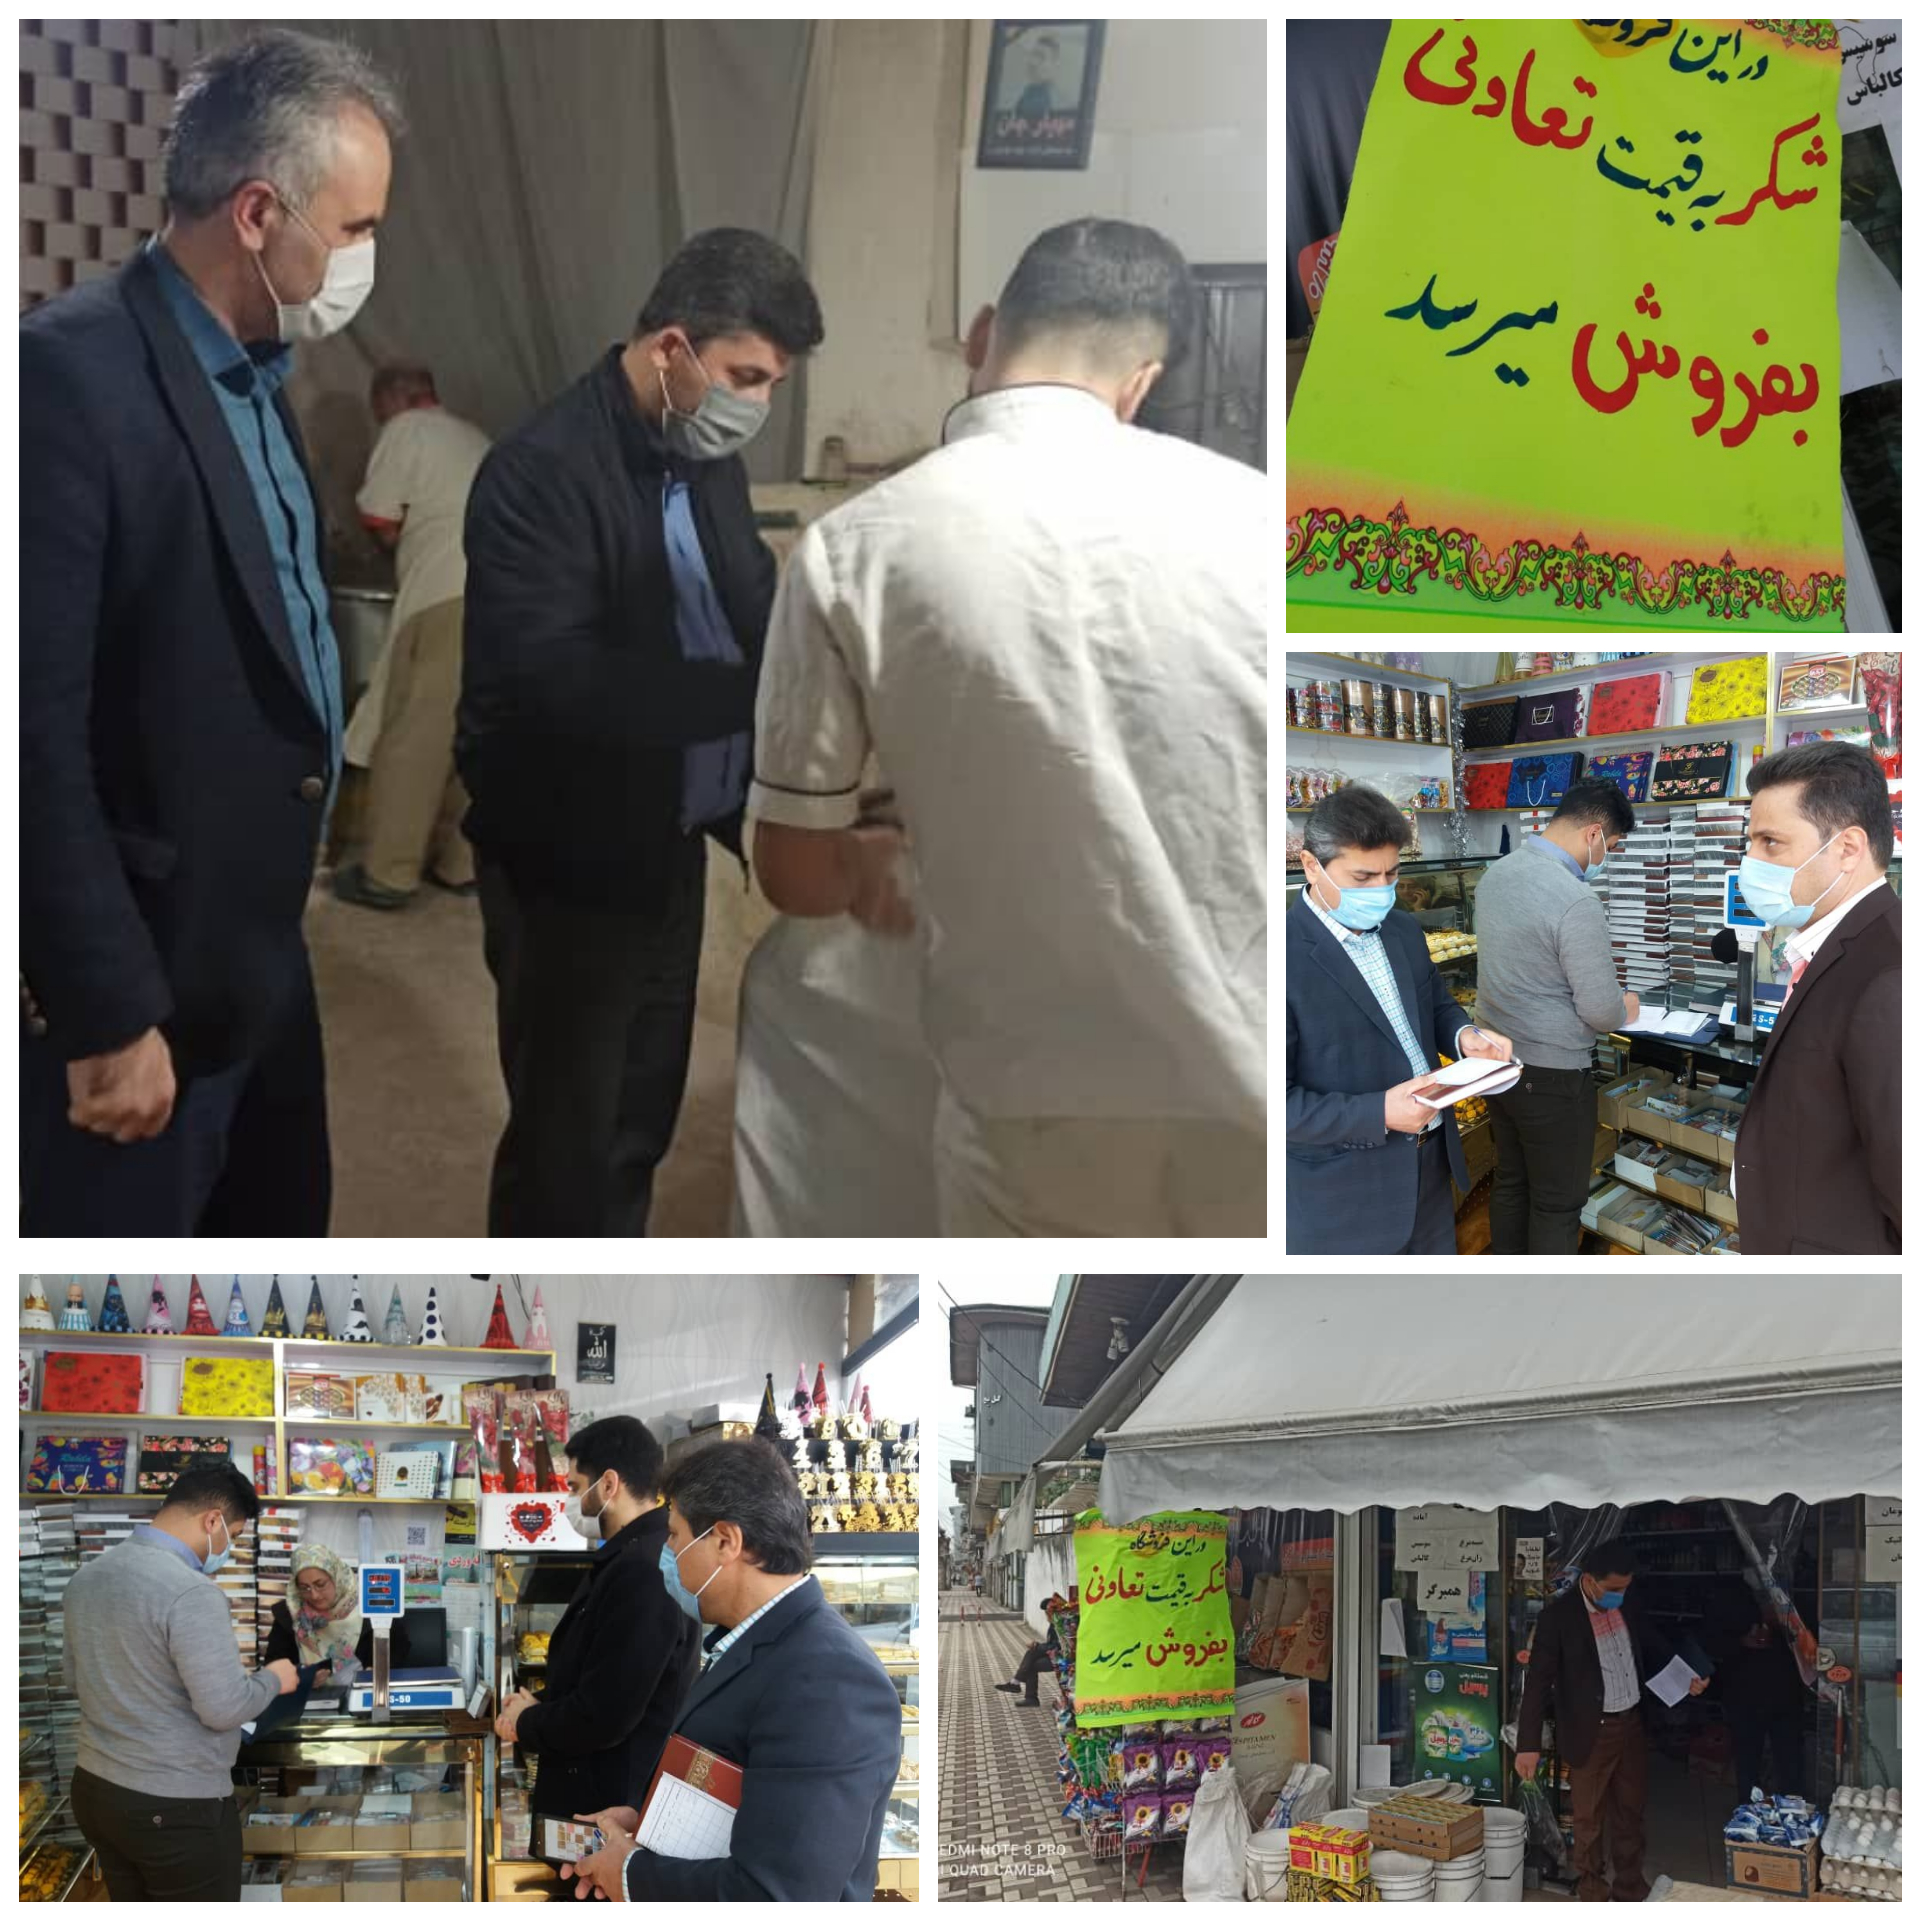 بازرسی های مشترک بازار از ١۵ بهمن به مدت دوماه در صومعه سرا اجرا می شود.